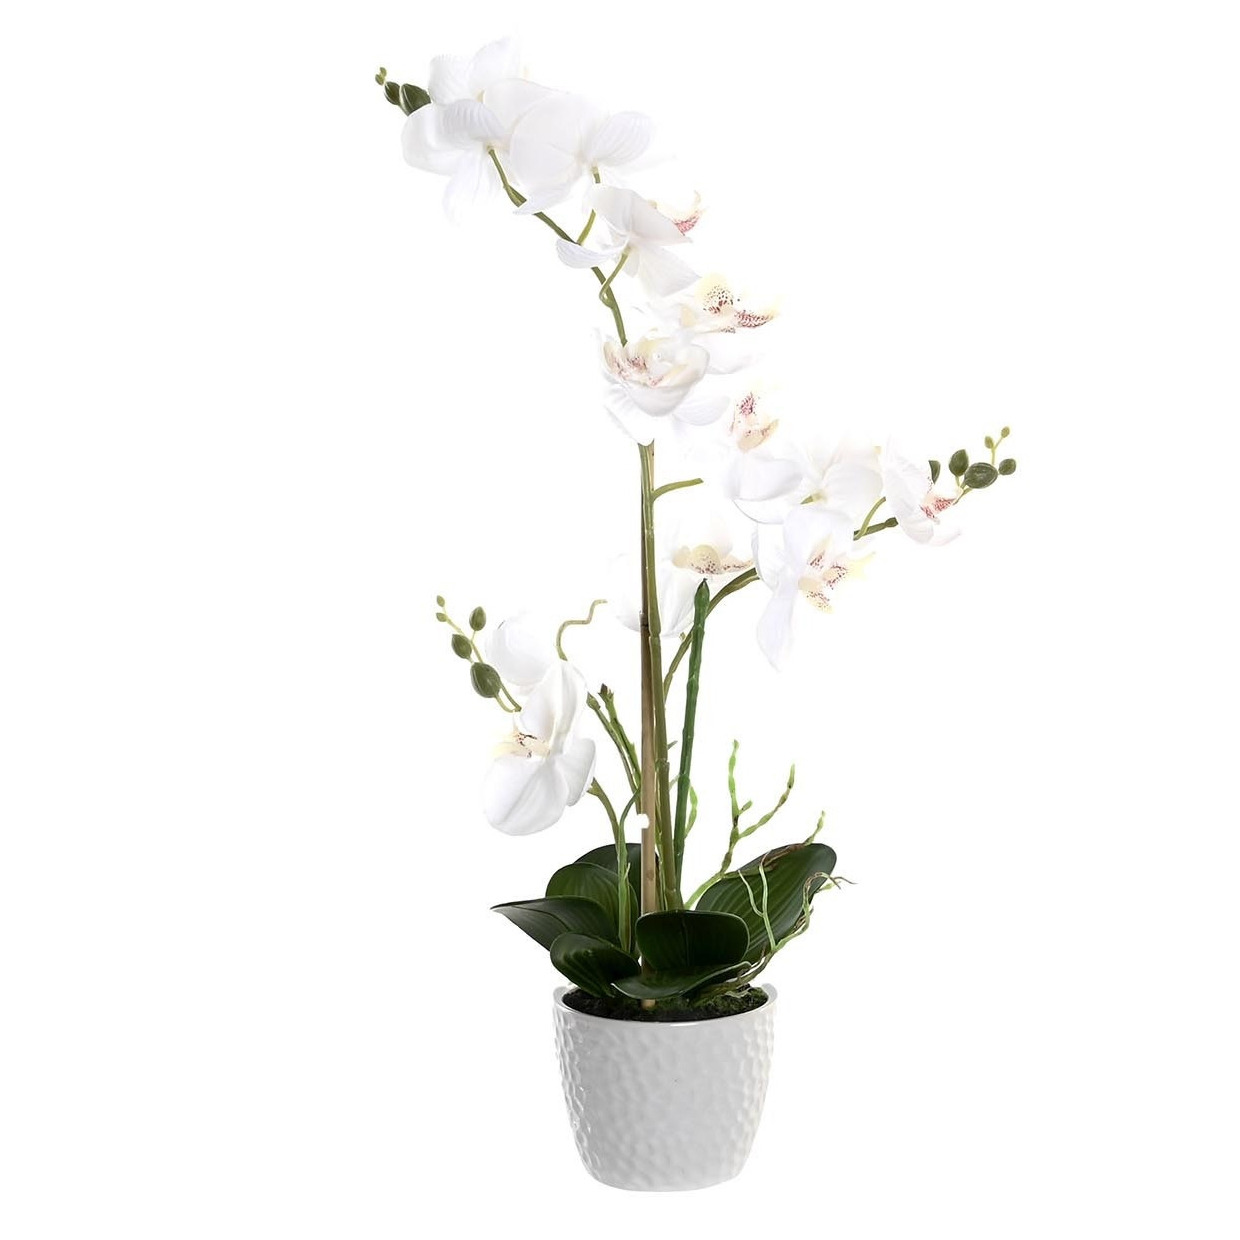 Orchidee bloemen kunstplant in witte bloempot witte bloemen H60 cm